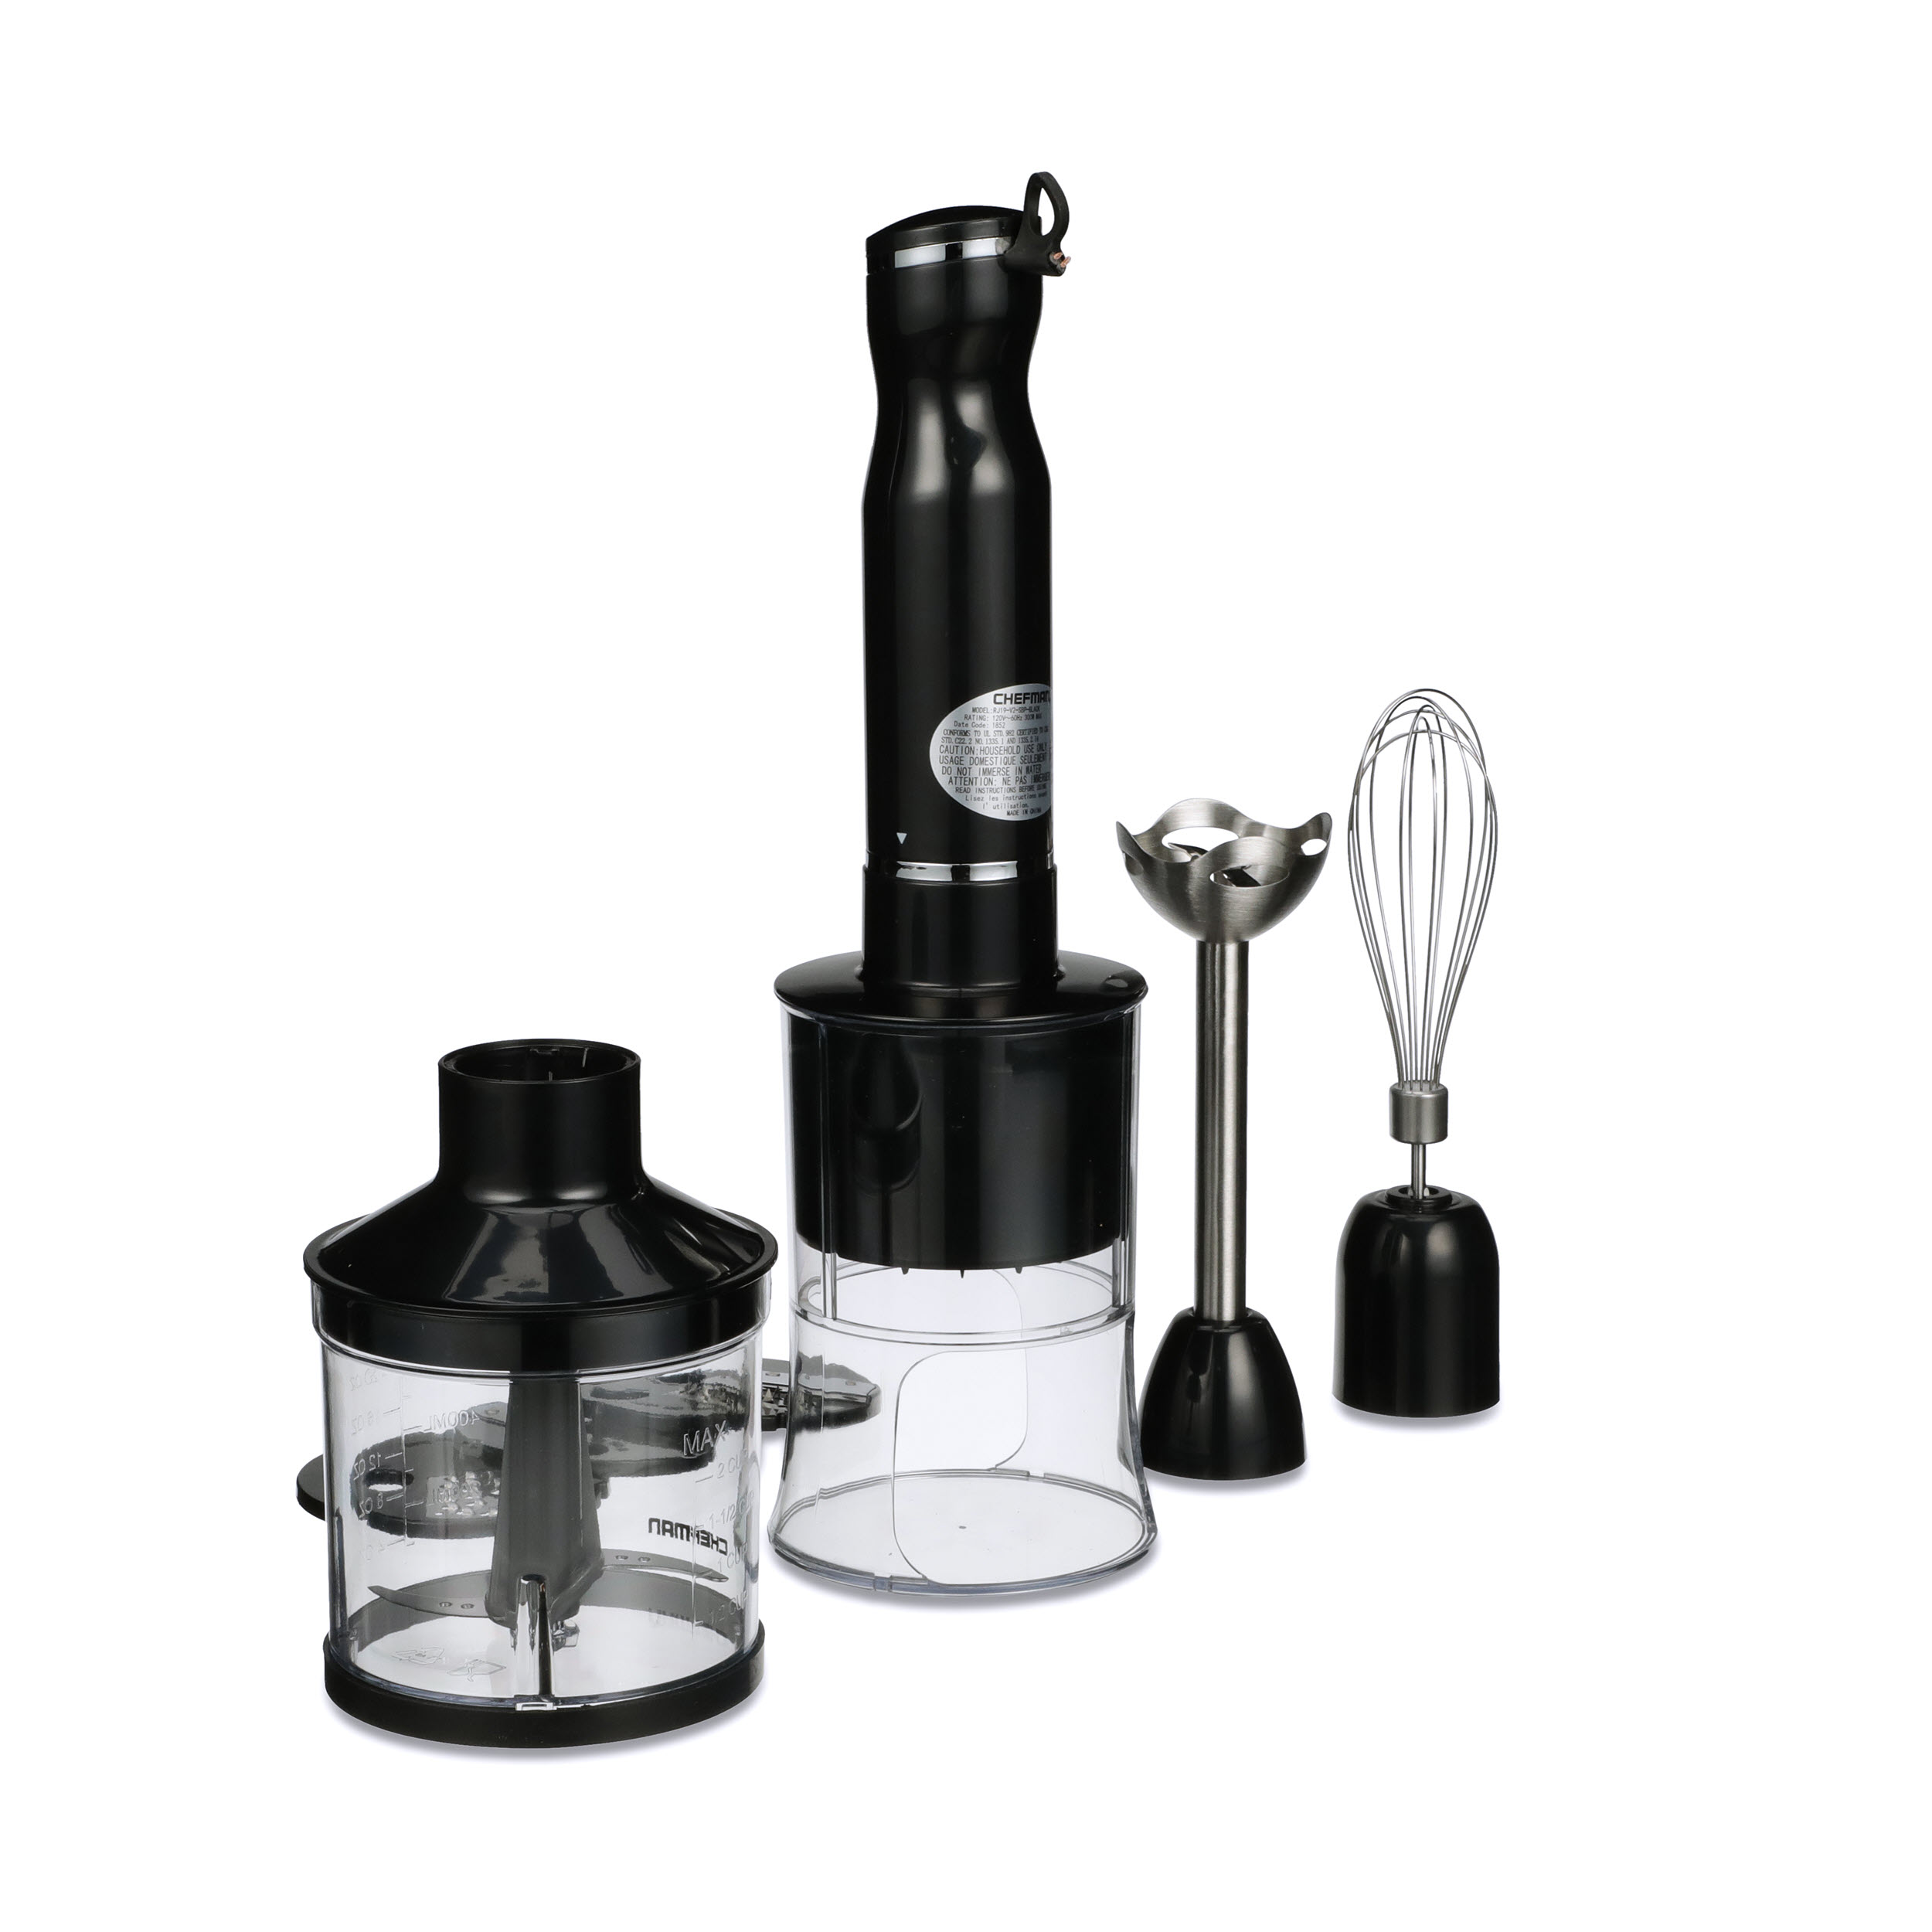 Chefman Electric Spiralizer & Immersion Blender, 6-in-1 Food Prep